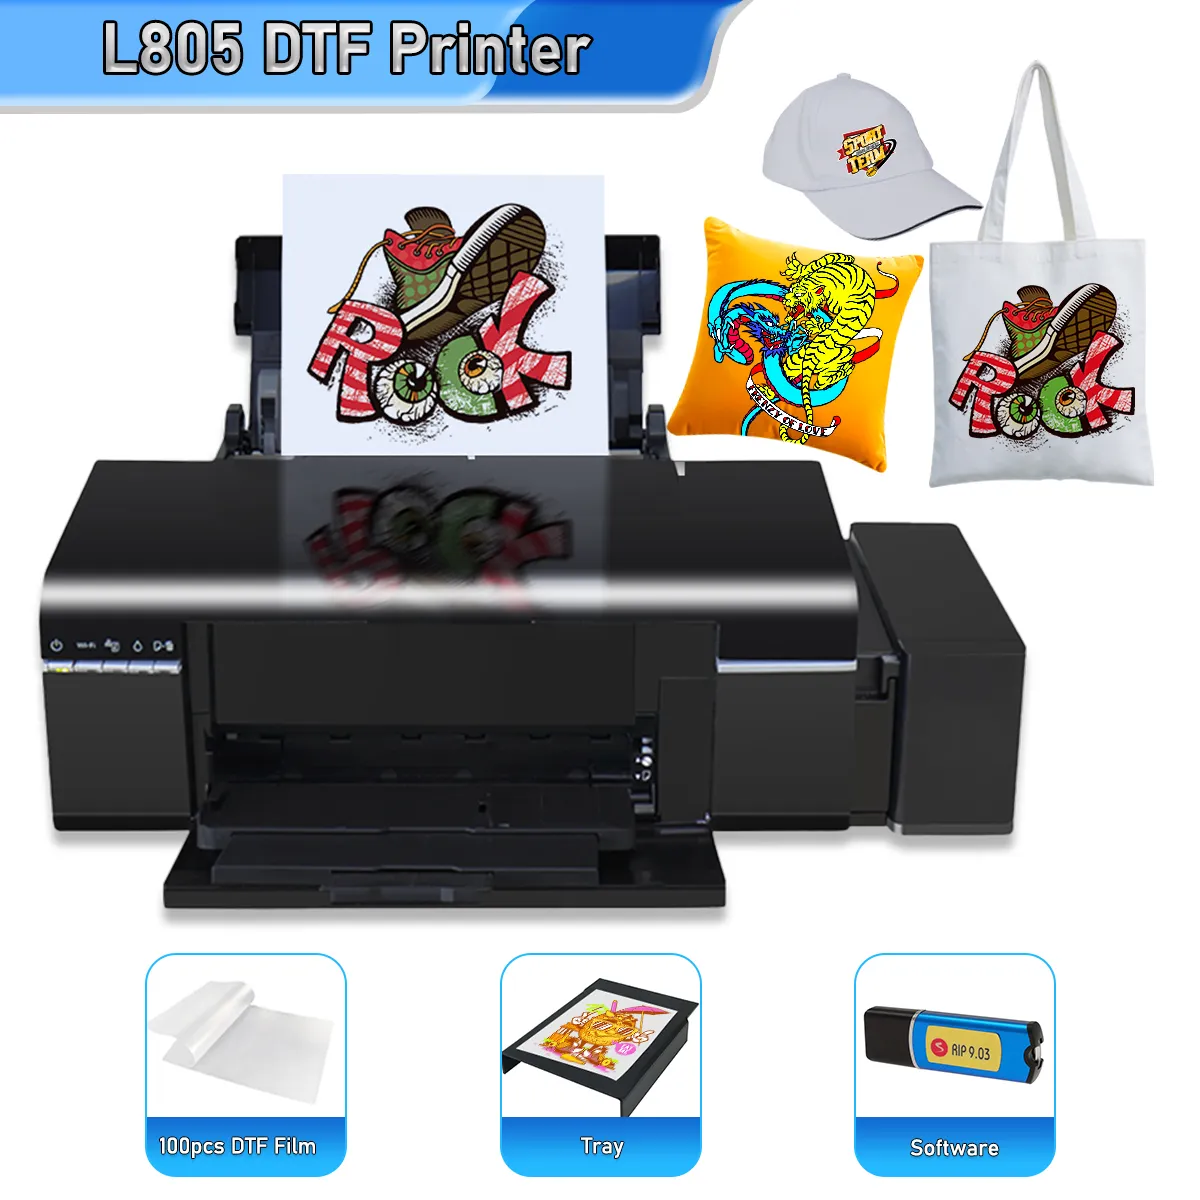 Принтер DTF A4 для Epson L805 DTF, прямая передача пленки, принтер для одежды, текстиля, футболок, принта DTF, переносной принтер